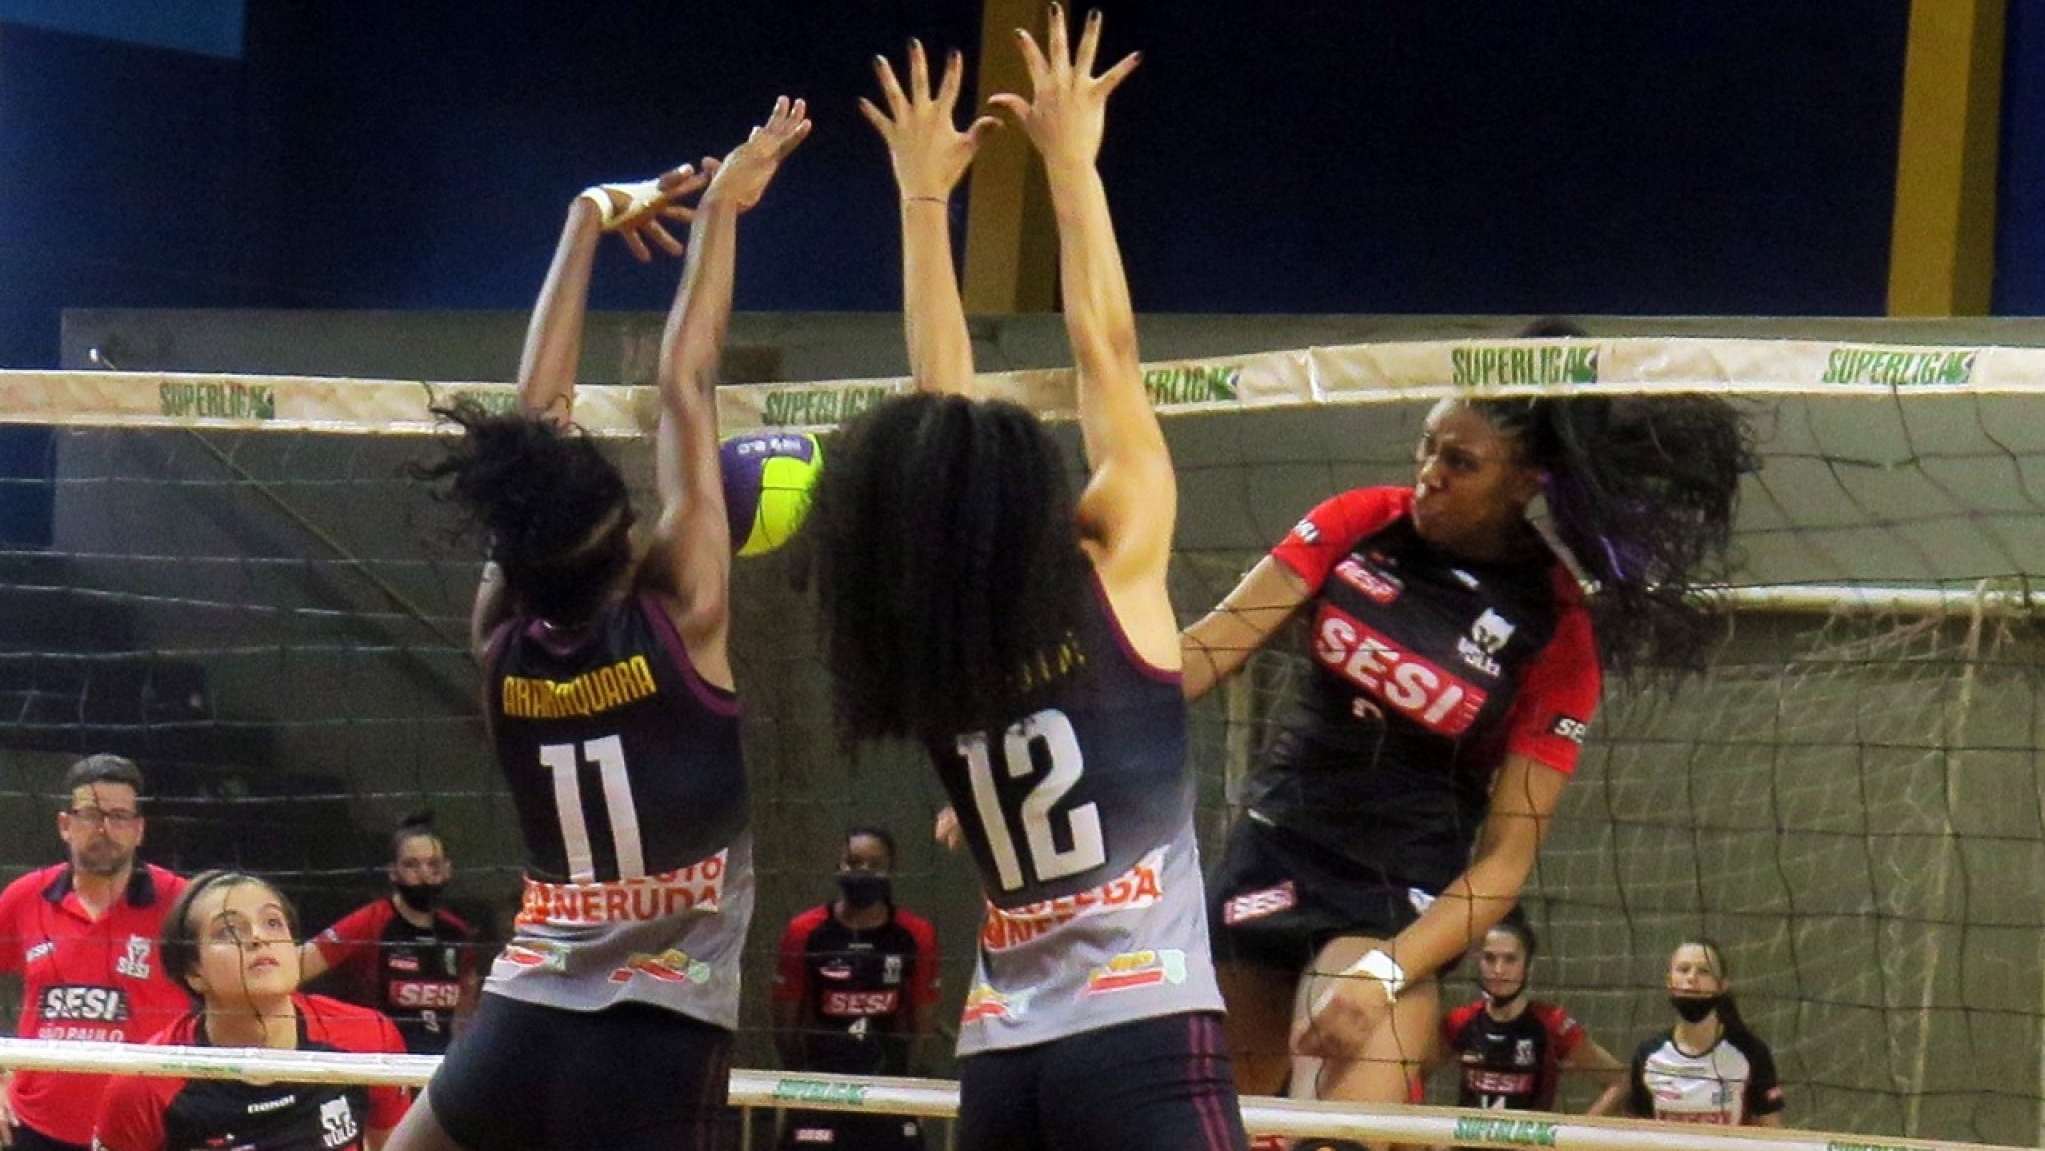 Vôlei feminino sub-20 de Araraquara vence São Carlos Clube - Portal Morada  - Notícias de Araraquara e Região